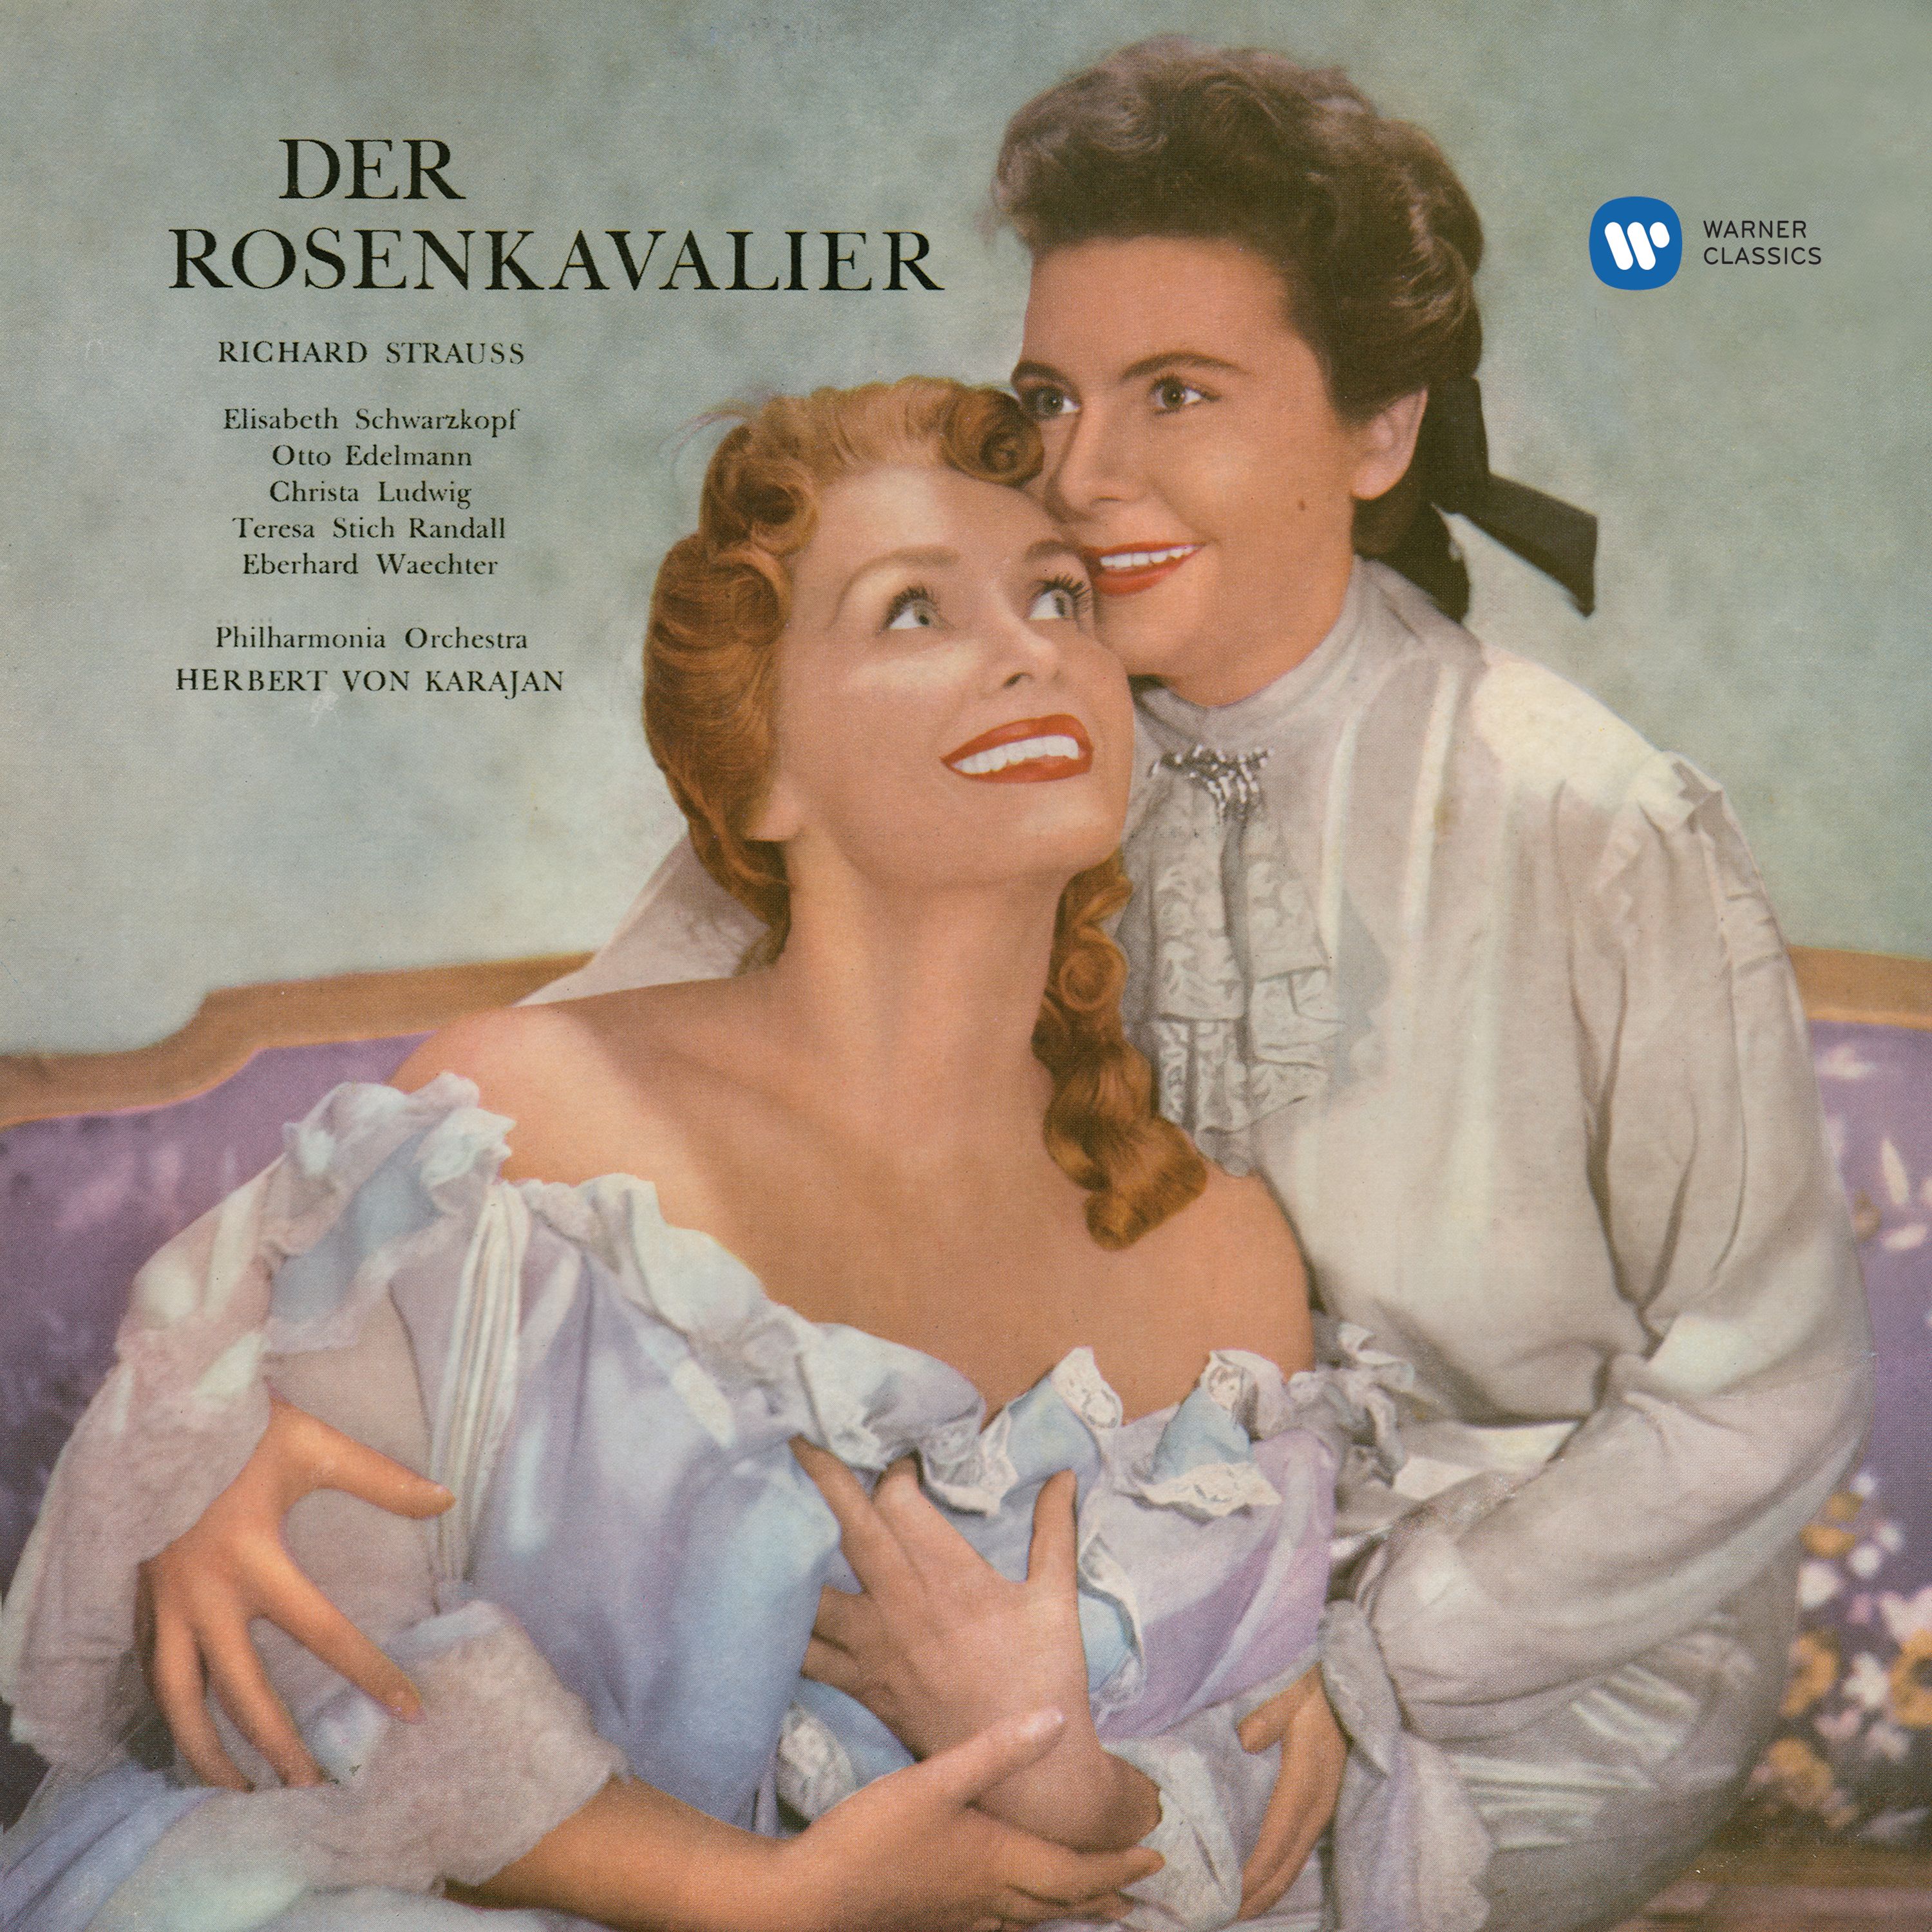 Der Rosenkavalier, Op. 59, Act 3: " Ist ein Traum, kann nicht wirklich sein ... Spü r' nur dich allein" Sophie, Octavian